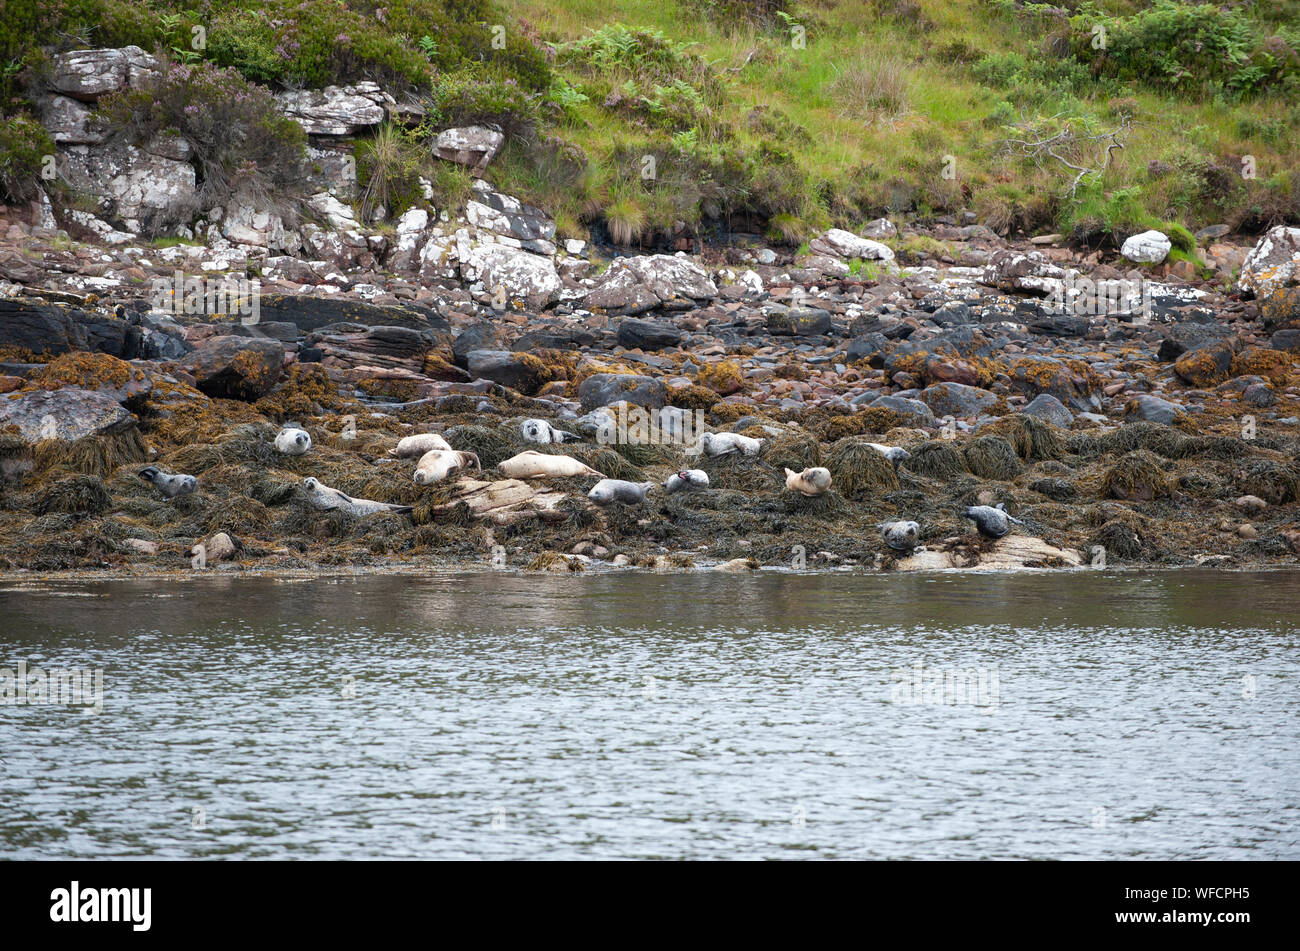 Le phoque commun, également connu sous le nom de Phoques communs, Phoca vitulina, sur l'île de hisser, Îles Summer, Ecosse, îles Britanniques, UK Banque D'Images